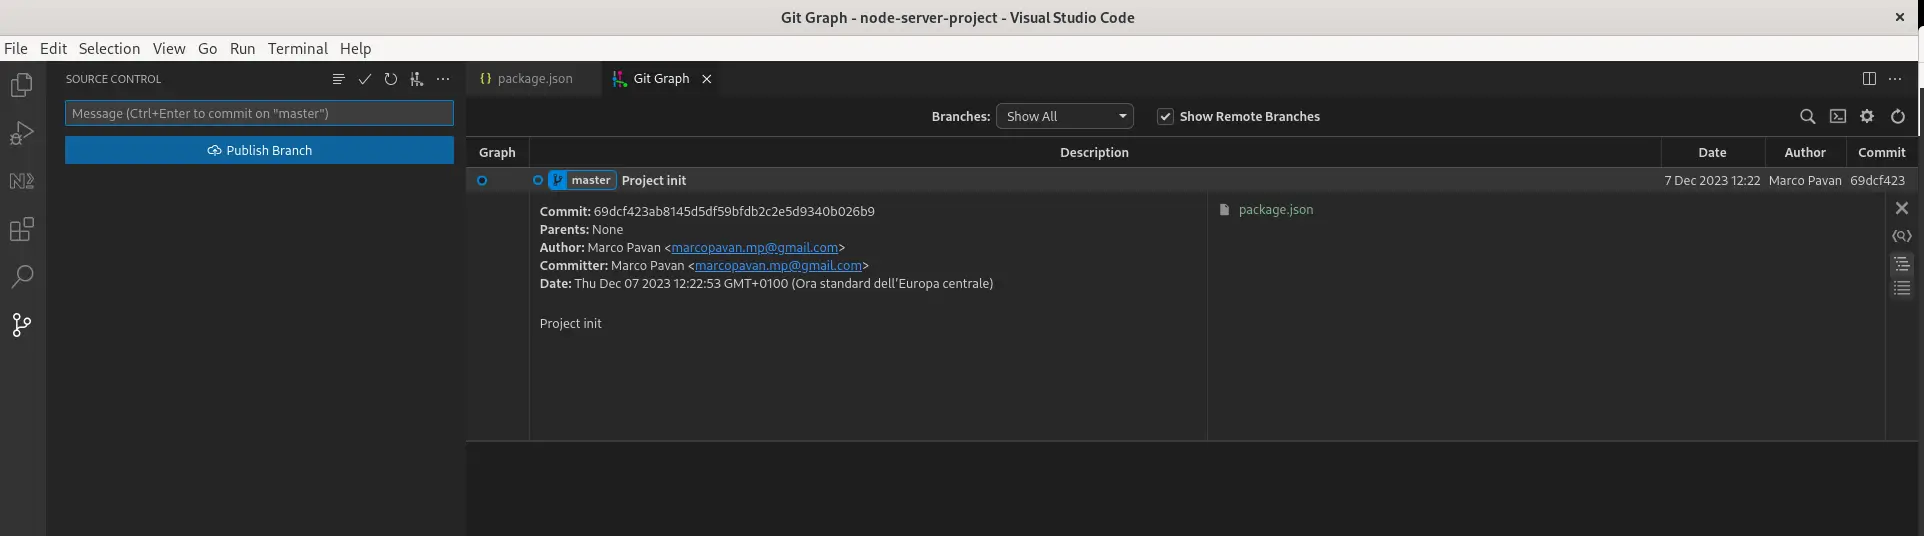 Il risultato finale visualizzto in Visual Studio Code